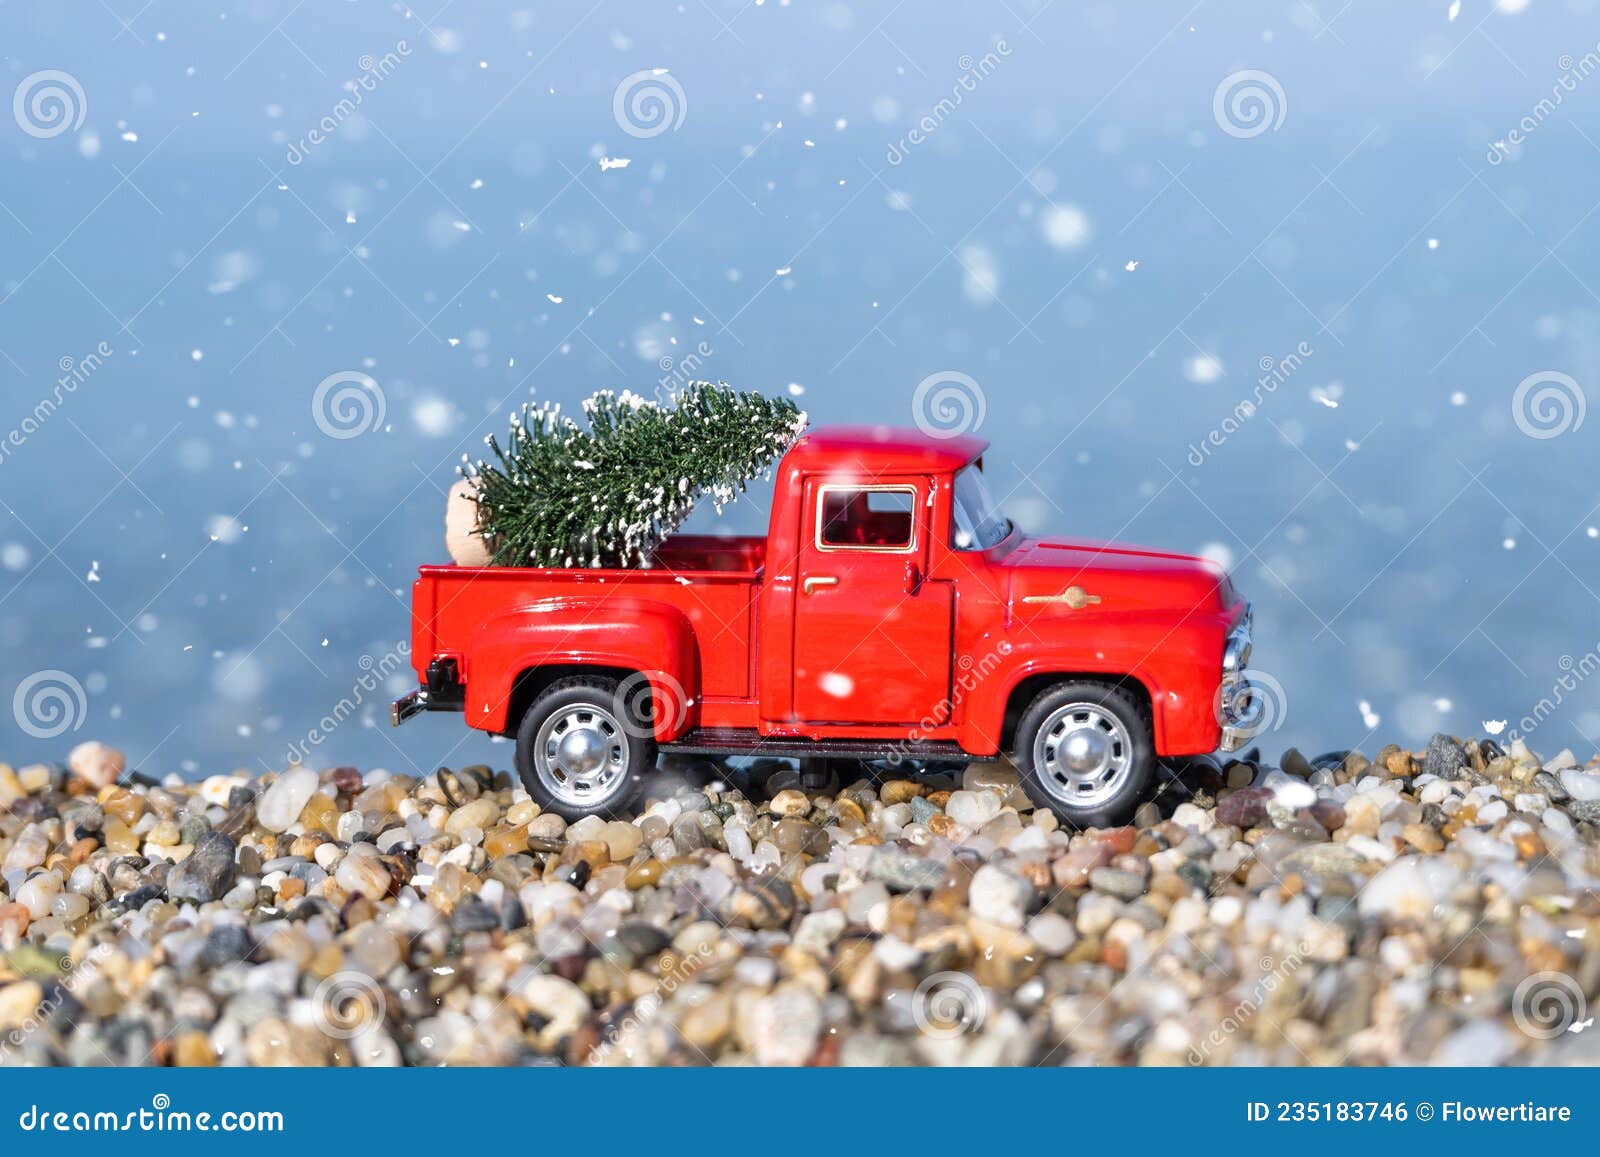 Roter Retro Kleinwagen Mit Weihnachtsbaum am Strand Im Schneefall 